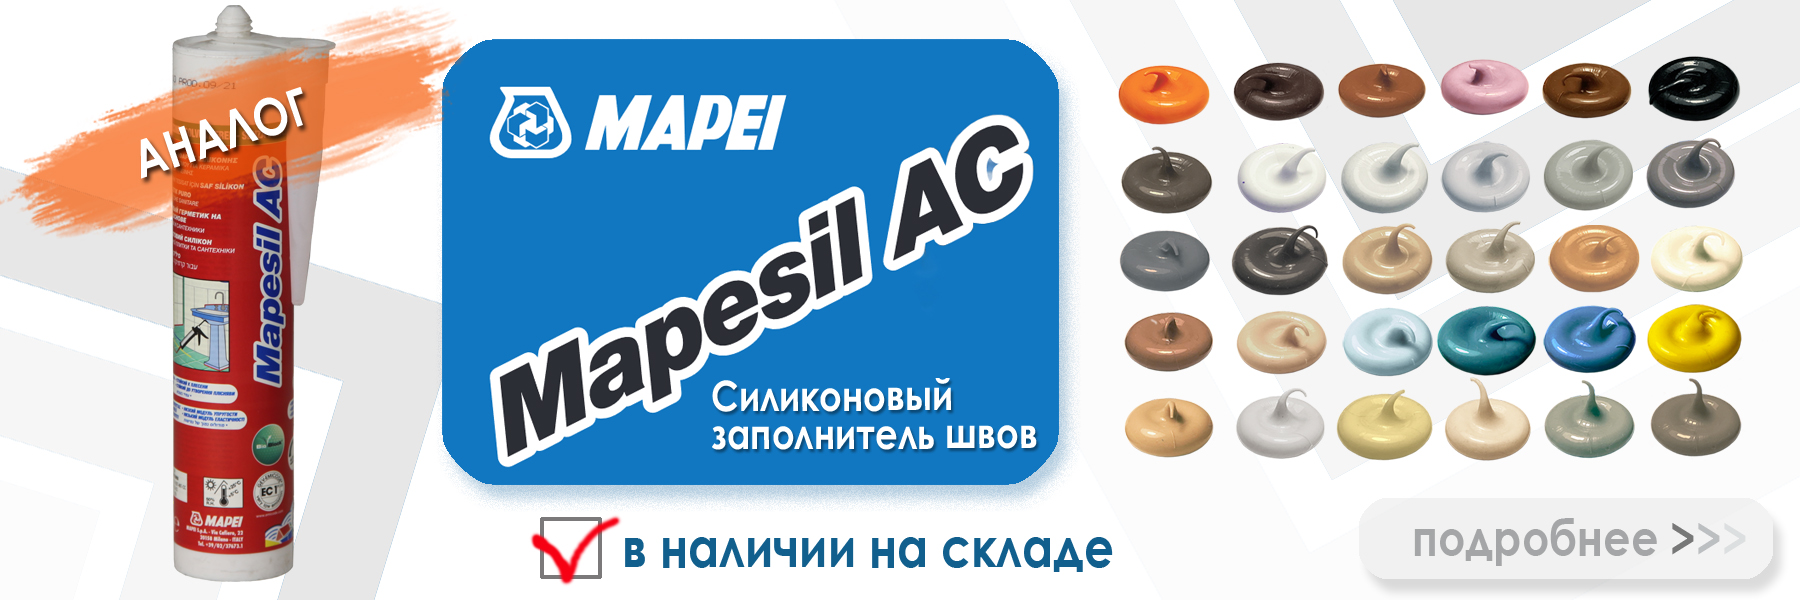 аналог силиконовой затирки Ceresit CS 25 16 графит  - Mapei Mapesil AC